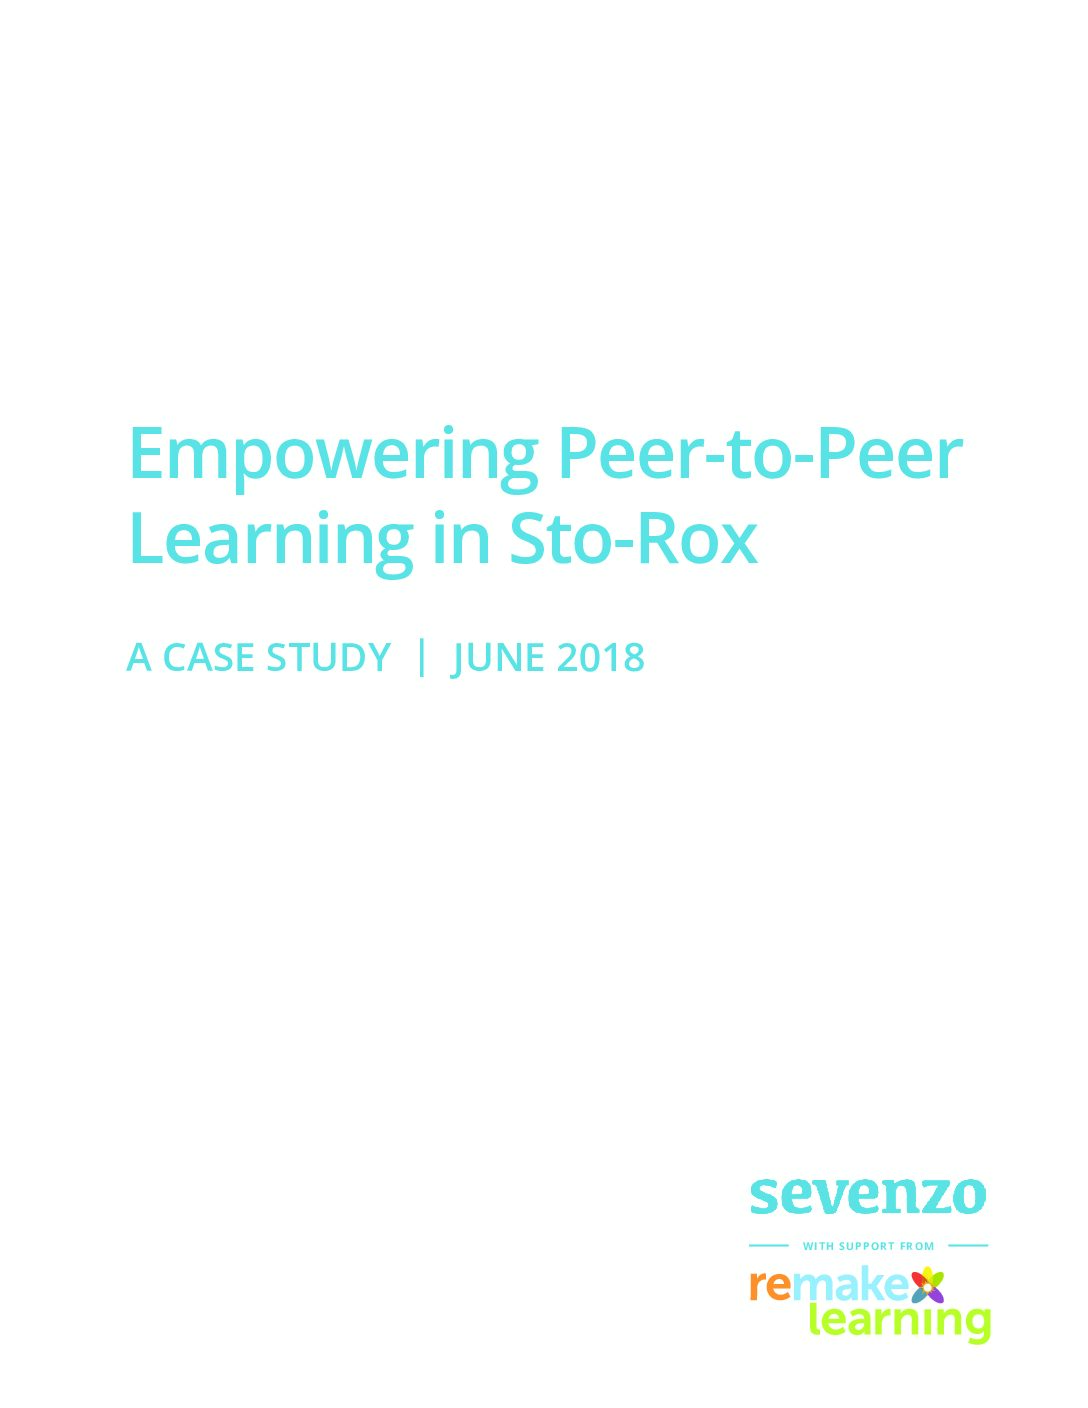 Empowering Peer-to-Peer Learning in Sto-Rock